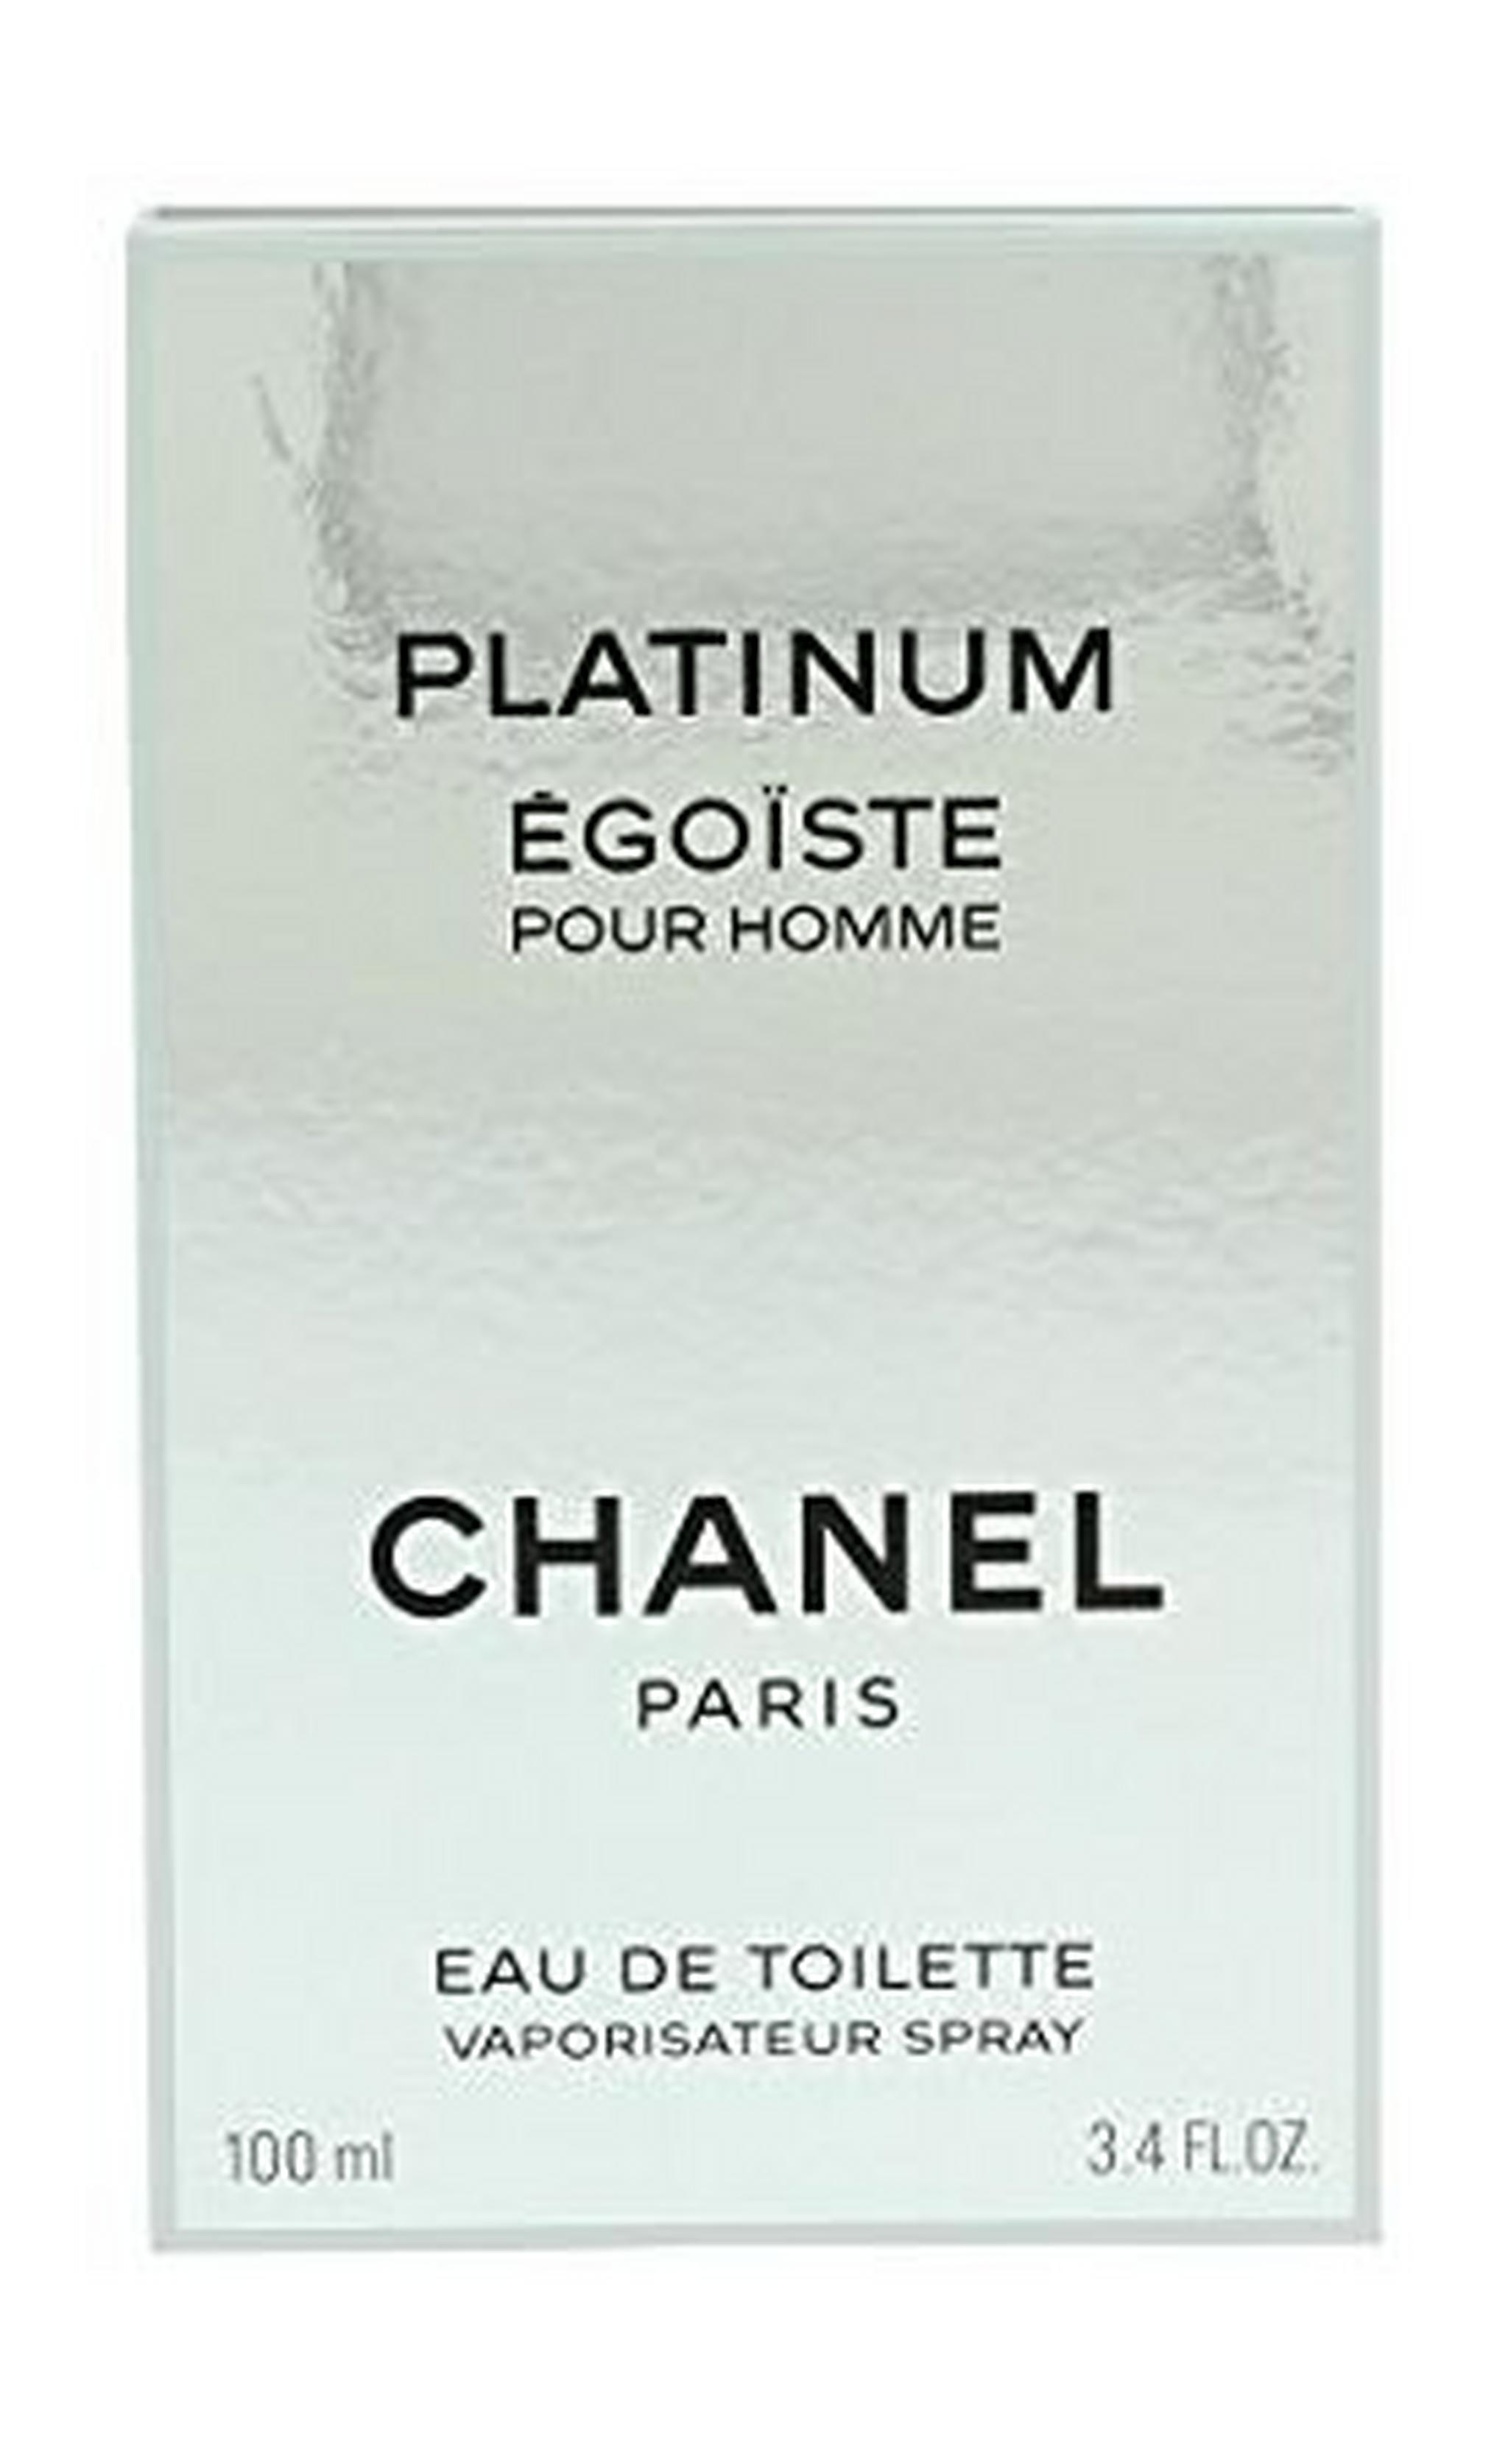 Platinum Egoiste by Chanel for Men 100mL Eau de Toilette